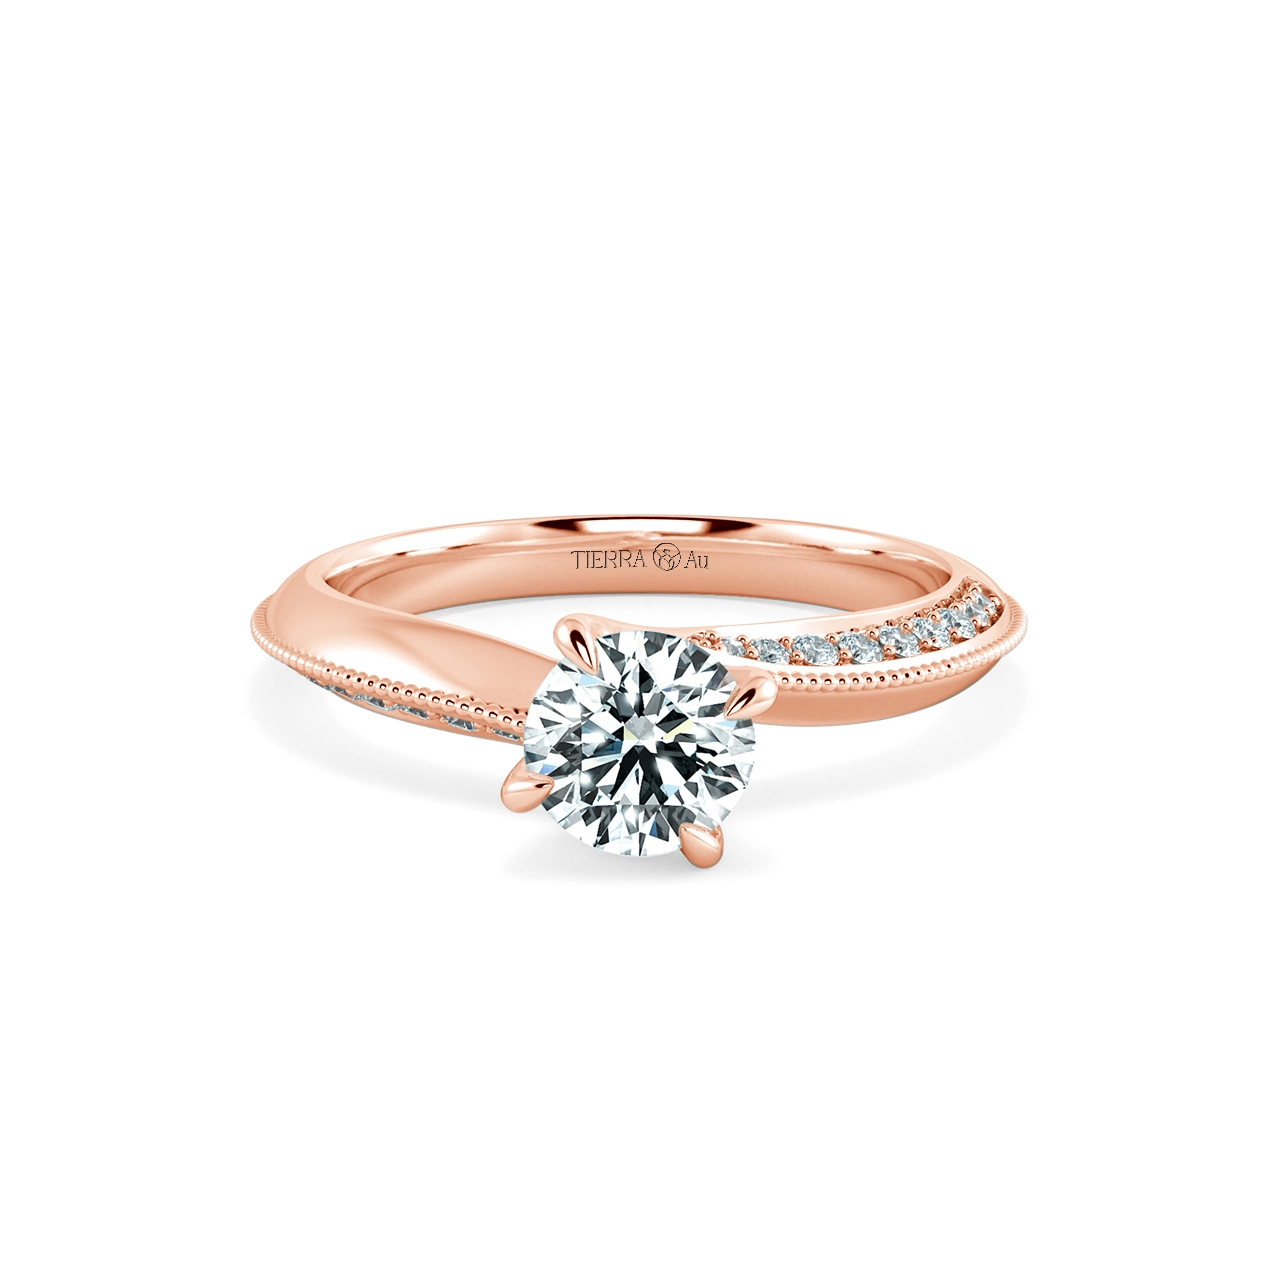 Nhẫn đính hôn kim cương Twist Olivia NCH1723 1